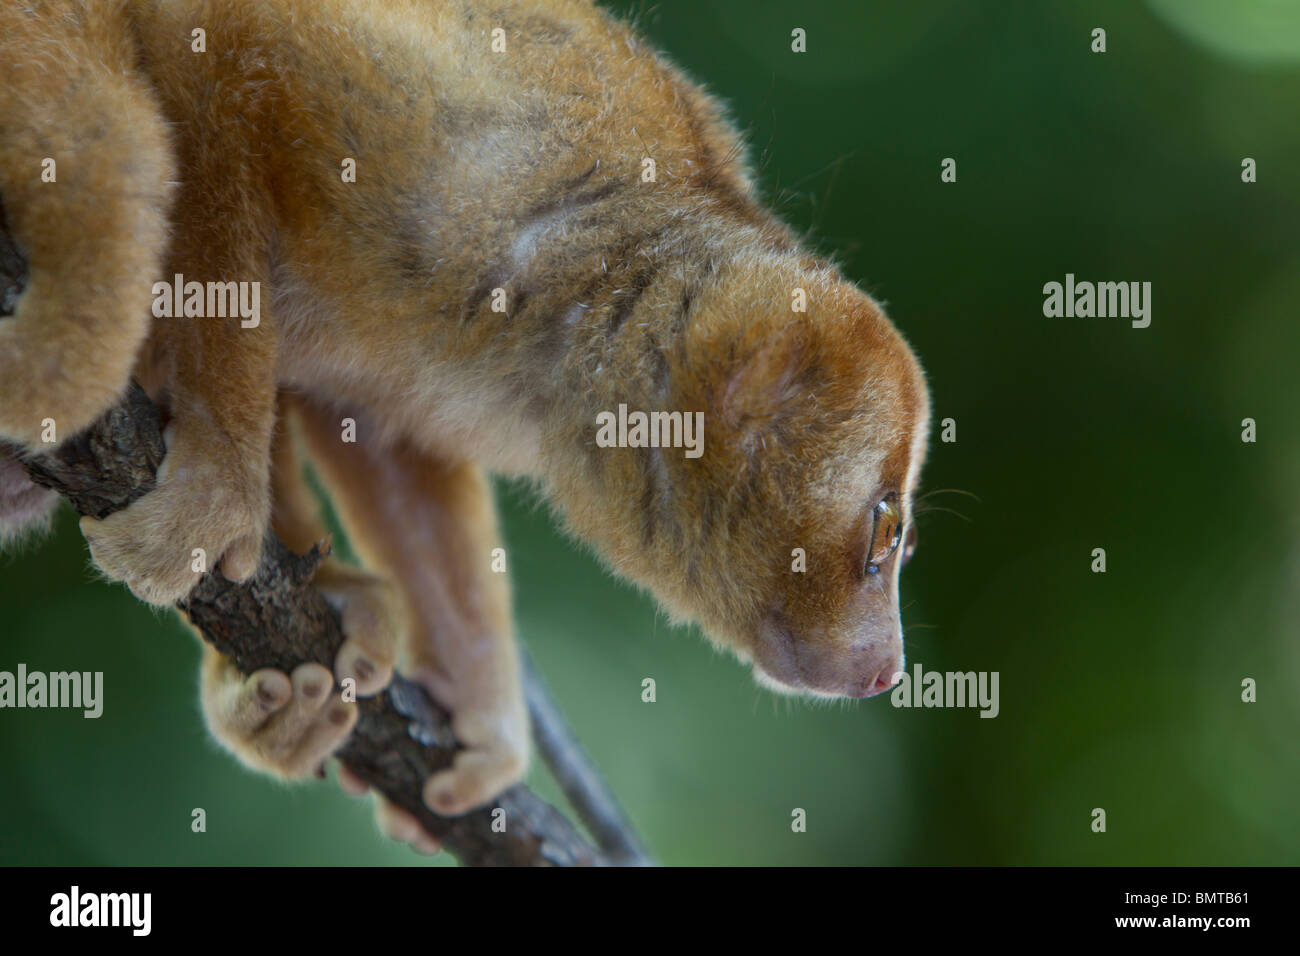 Loris lent mâle Orang Nycticebus menagensis reposant sur branch, Bornéo, Sabah, Malaisie. Banque D'Images